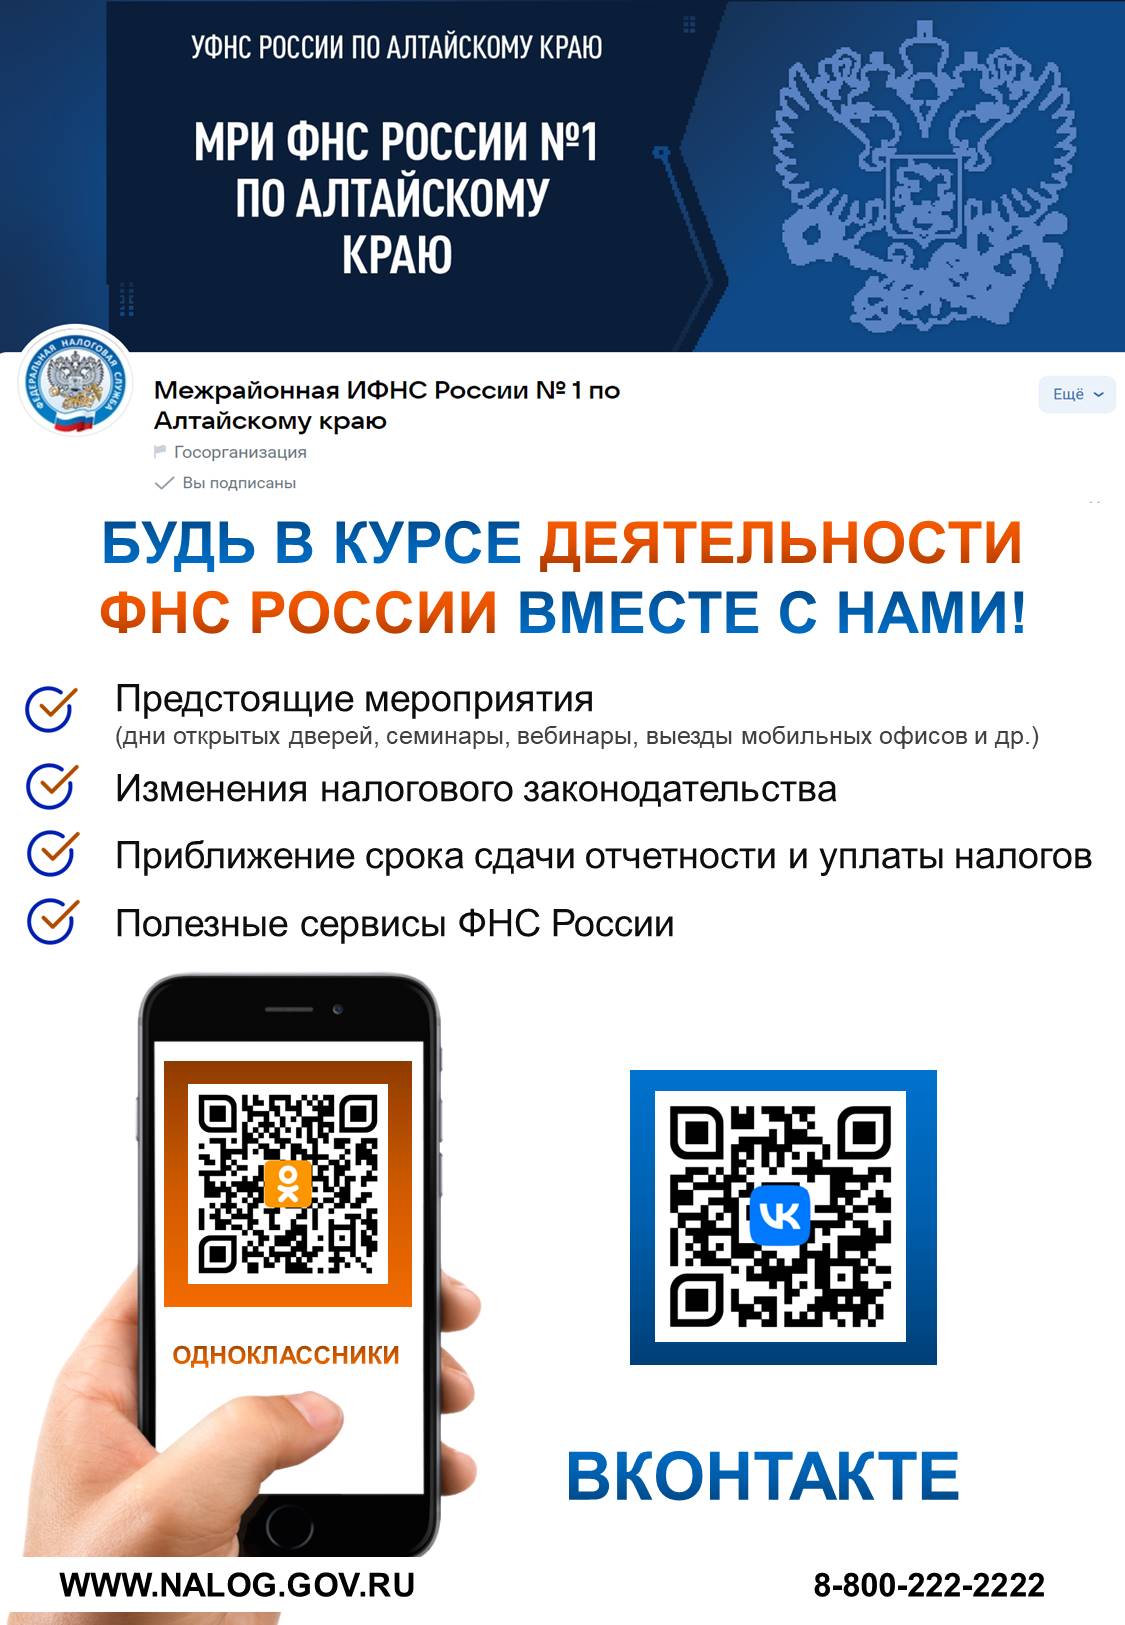 Межрайонная ИФНС России № 1 по Алтайскому краю приглашает граждан подписаться на официальные страницы.